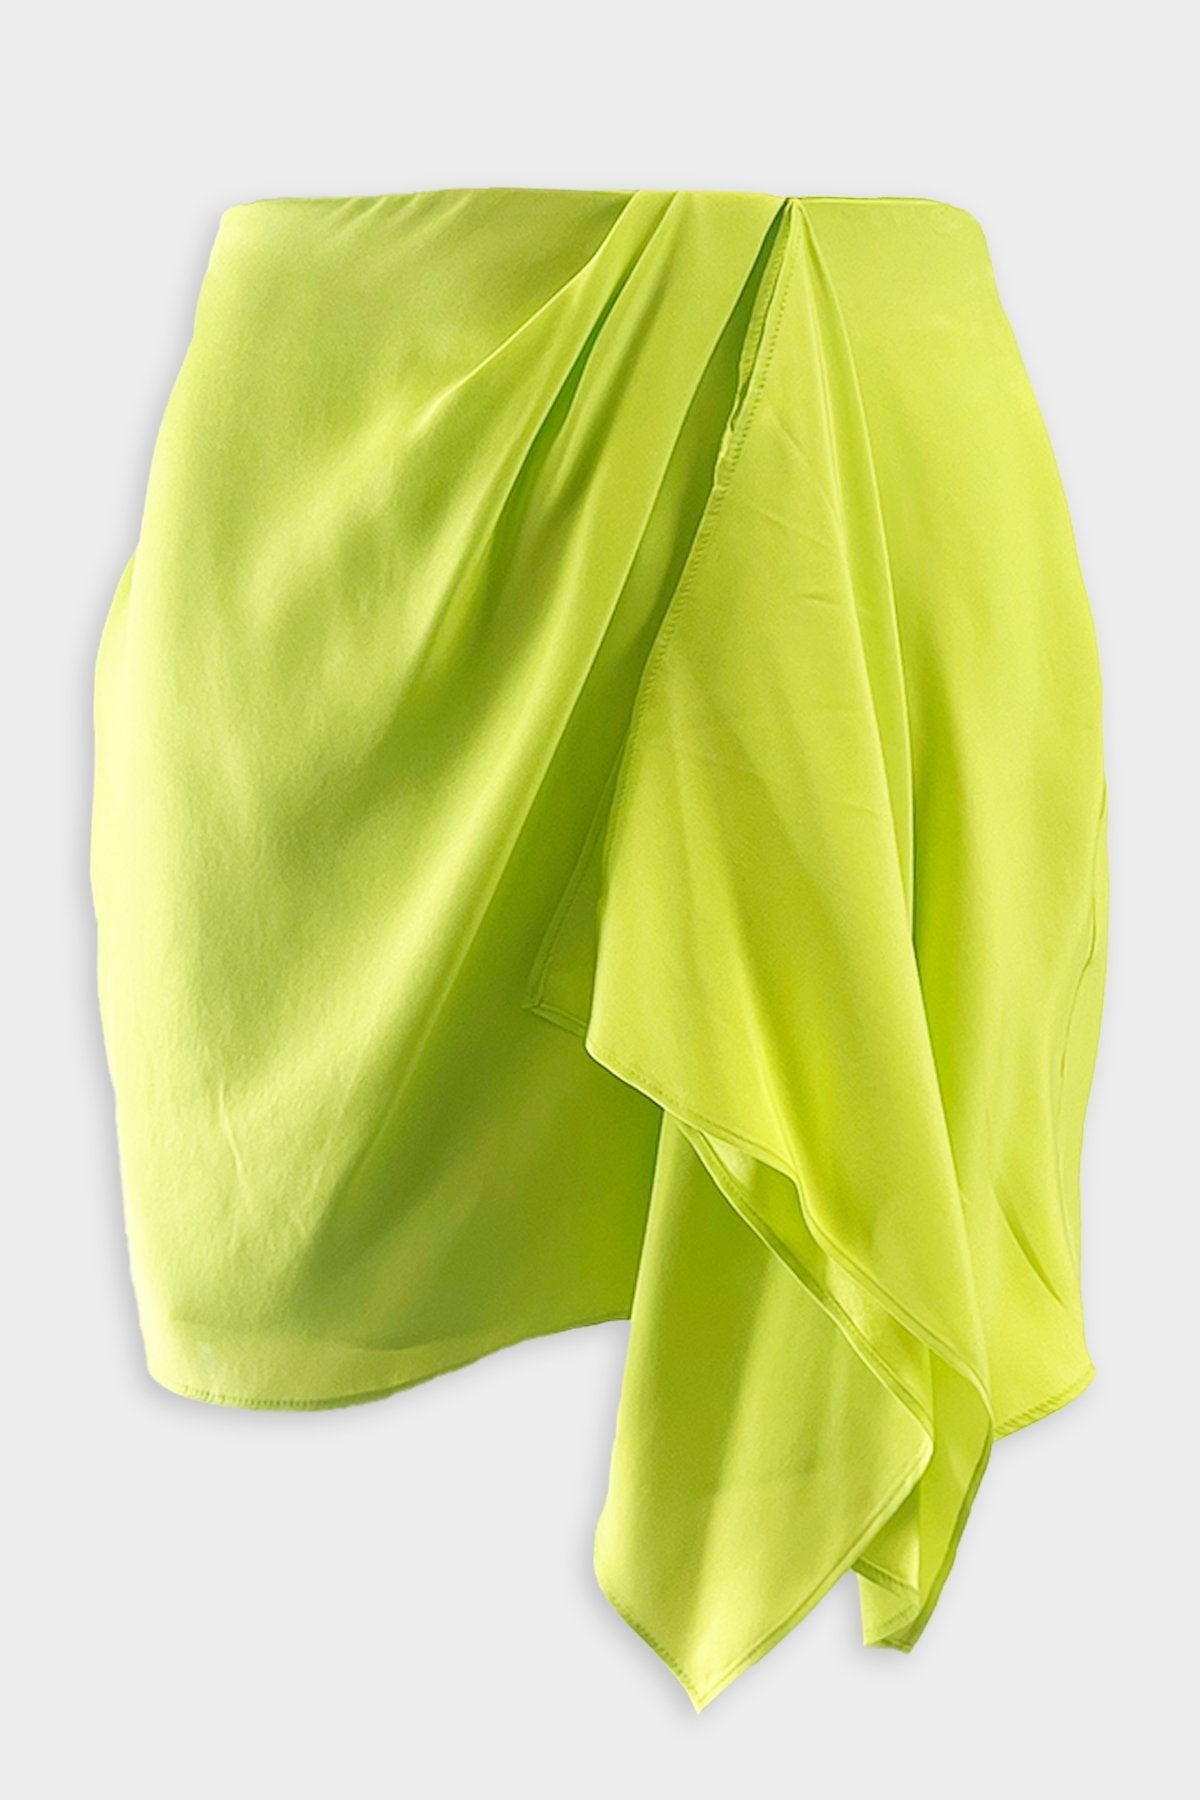 Anjo Skirt in Bright Green - shop-olivia.com